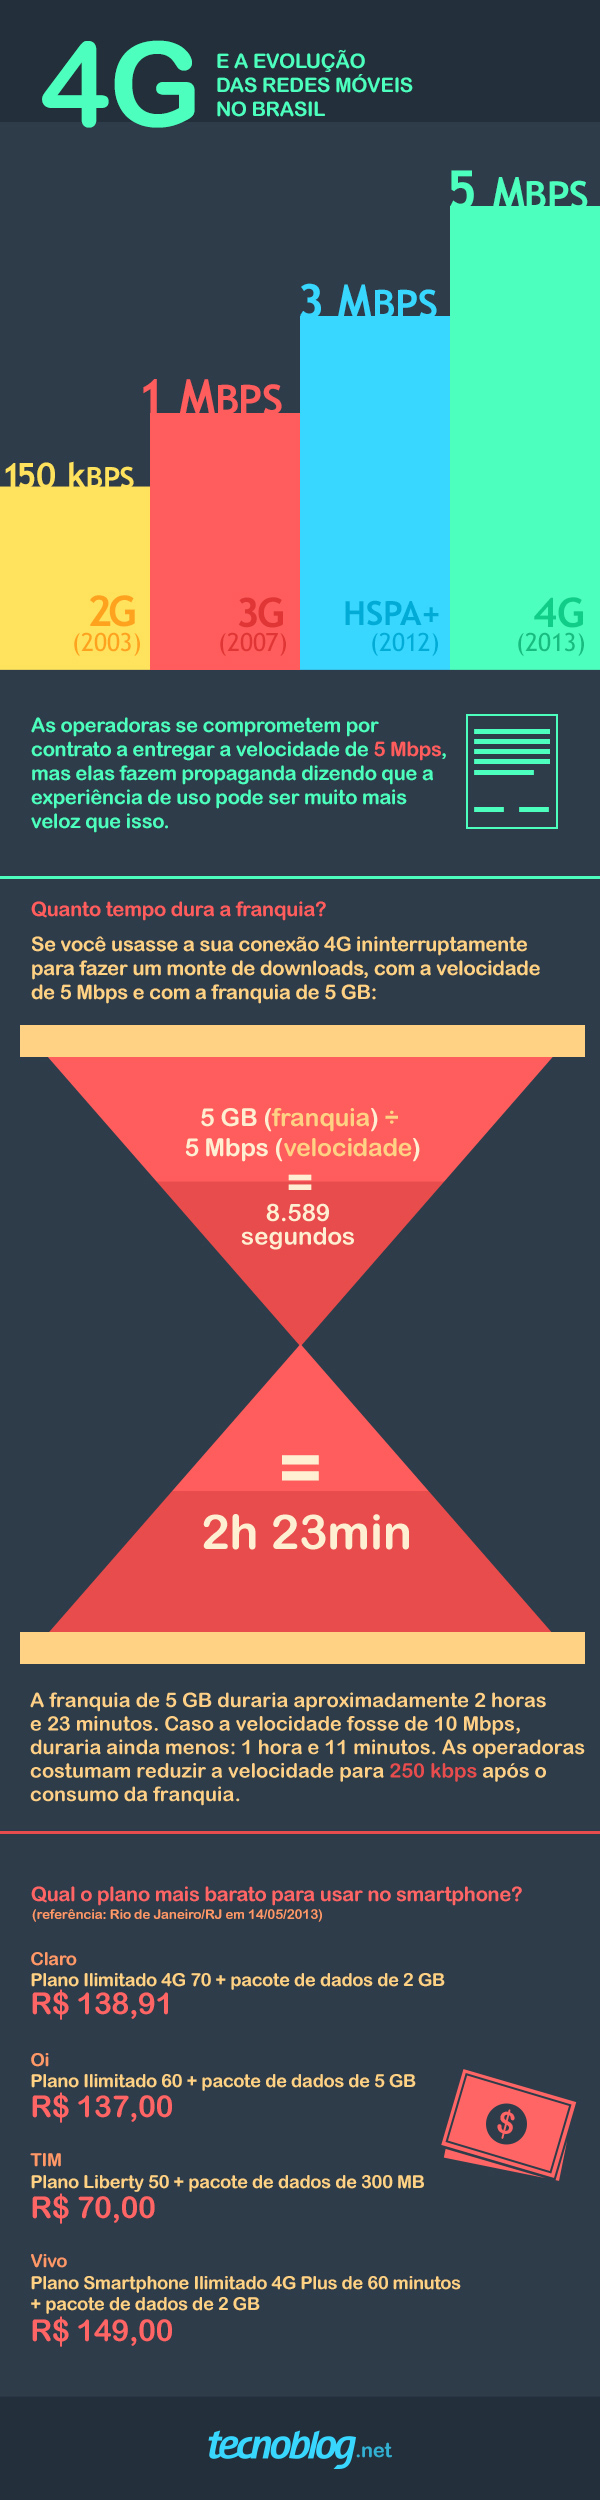 Planos e preços do 4G no Brasil